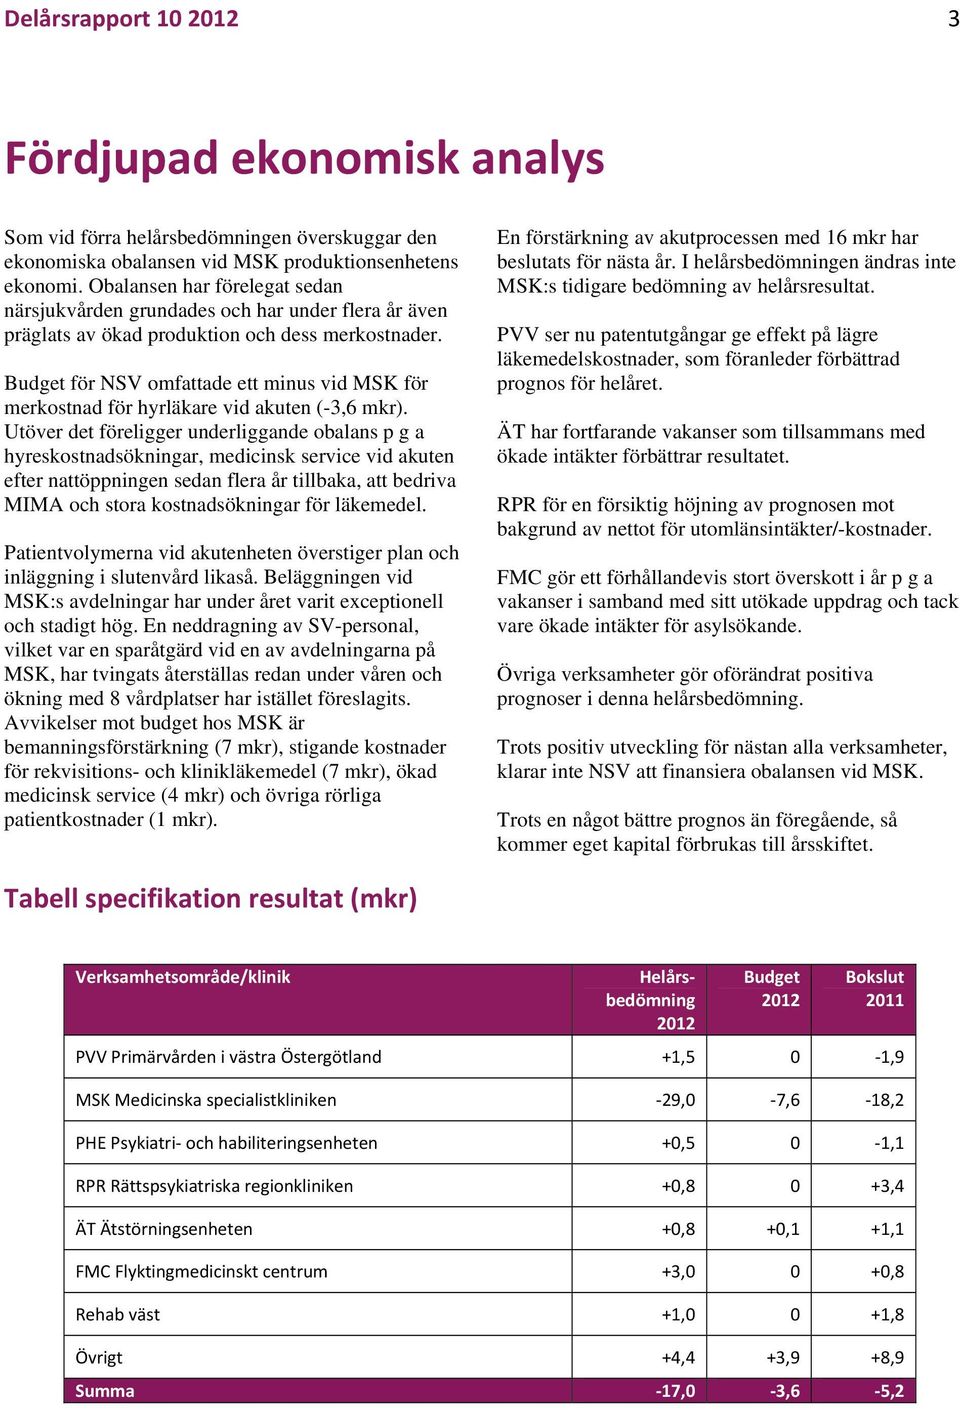 Budget för NSV omfattade ett minus vid MSK för merkostnad för hyrläkare vid akuten (-3,6 mkr).